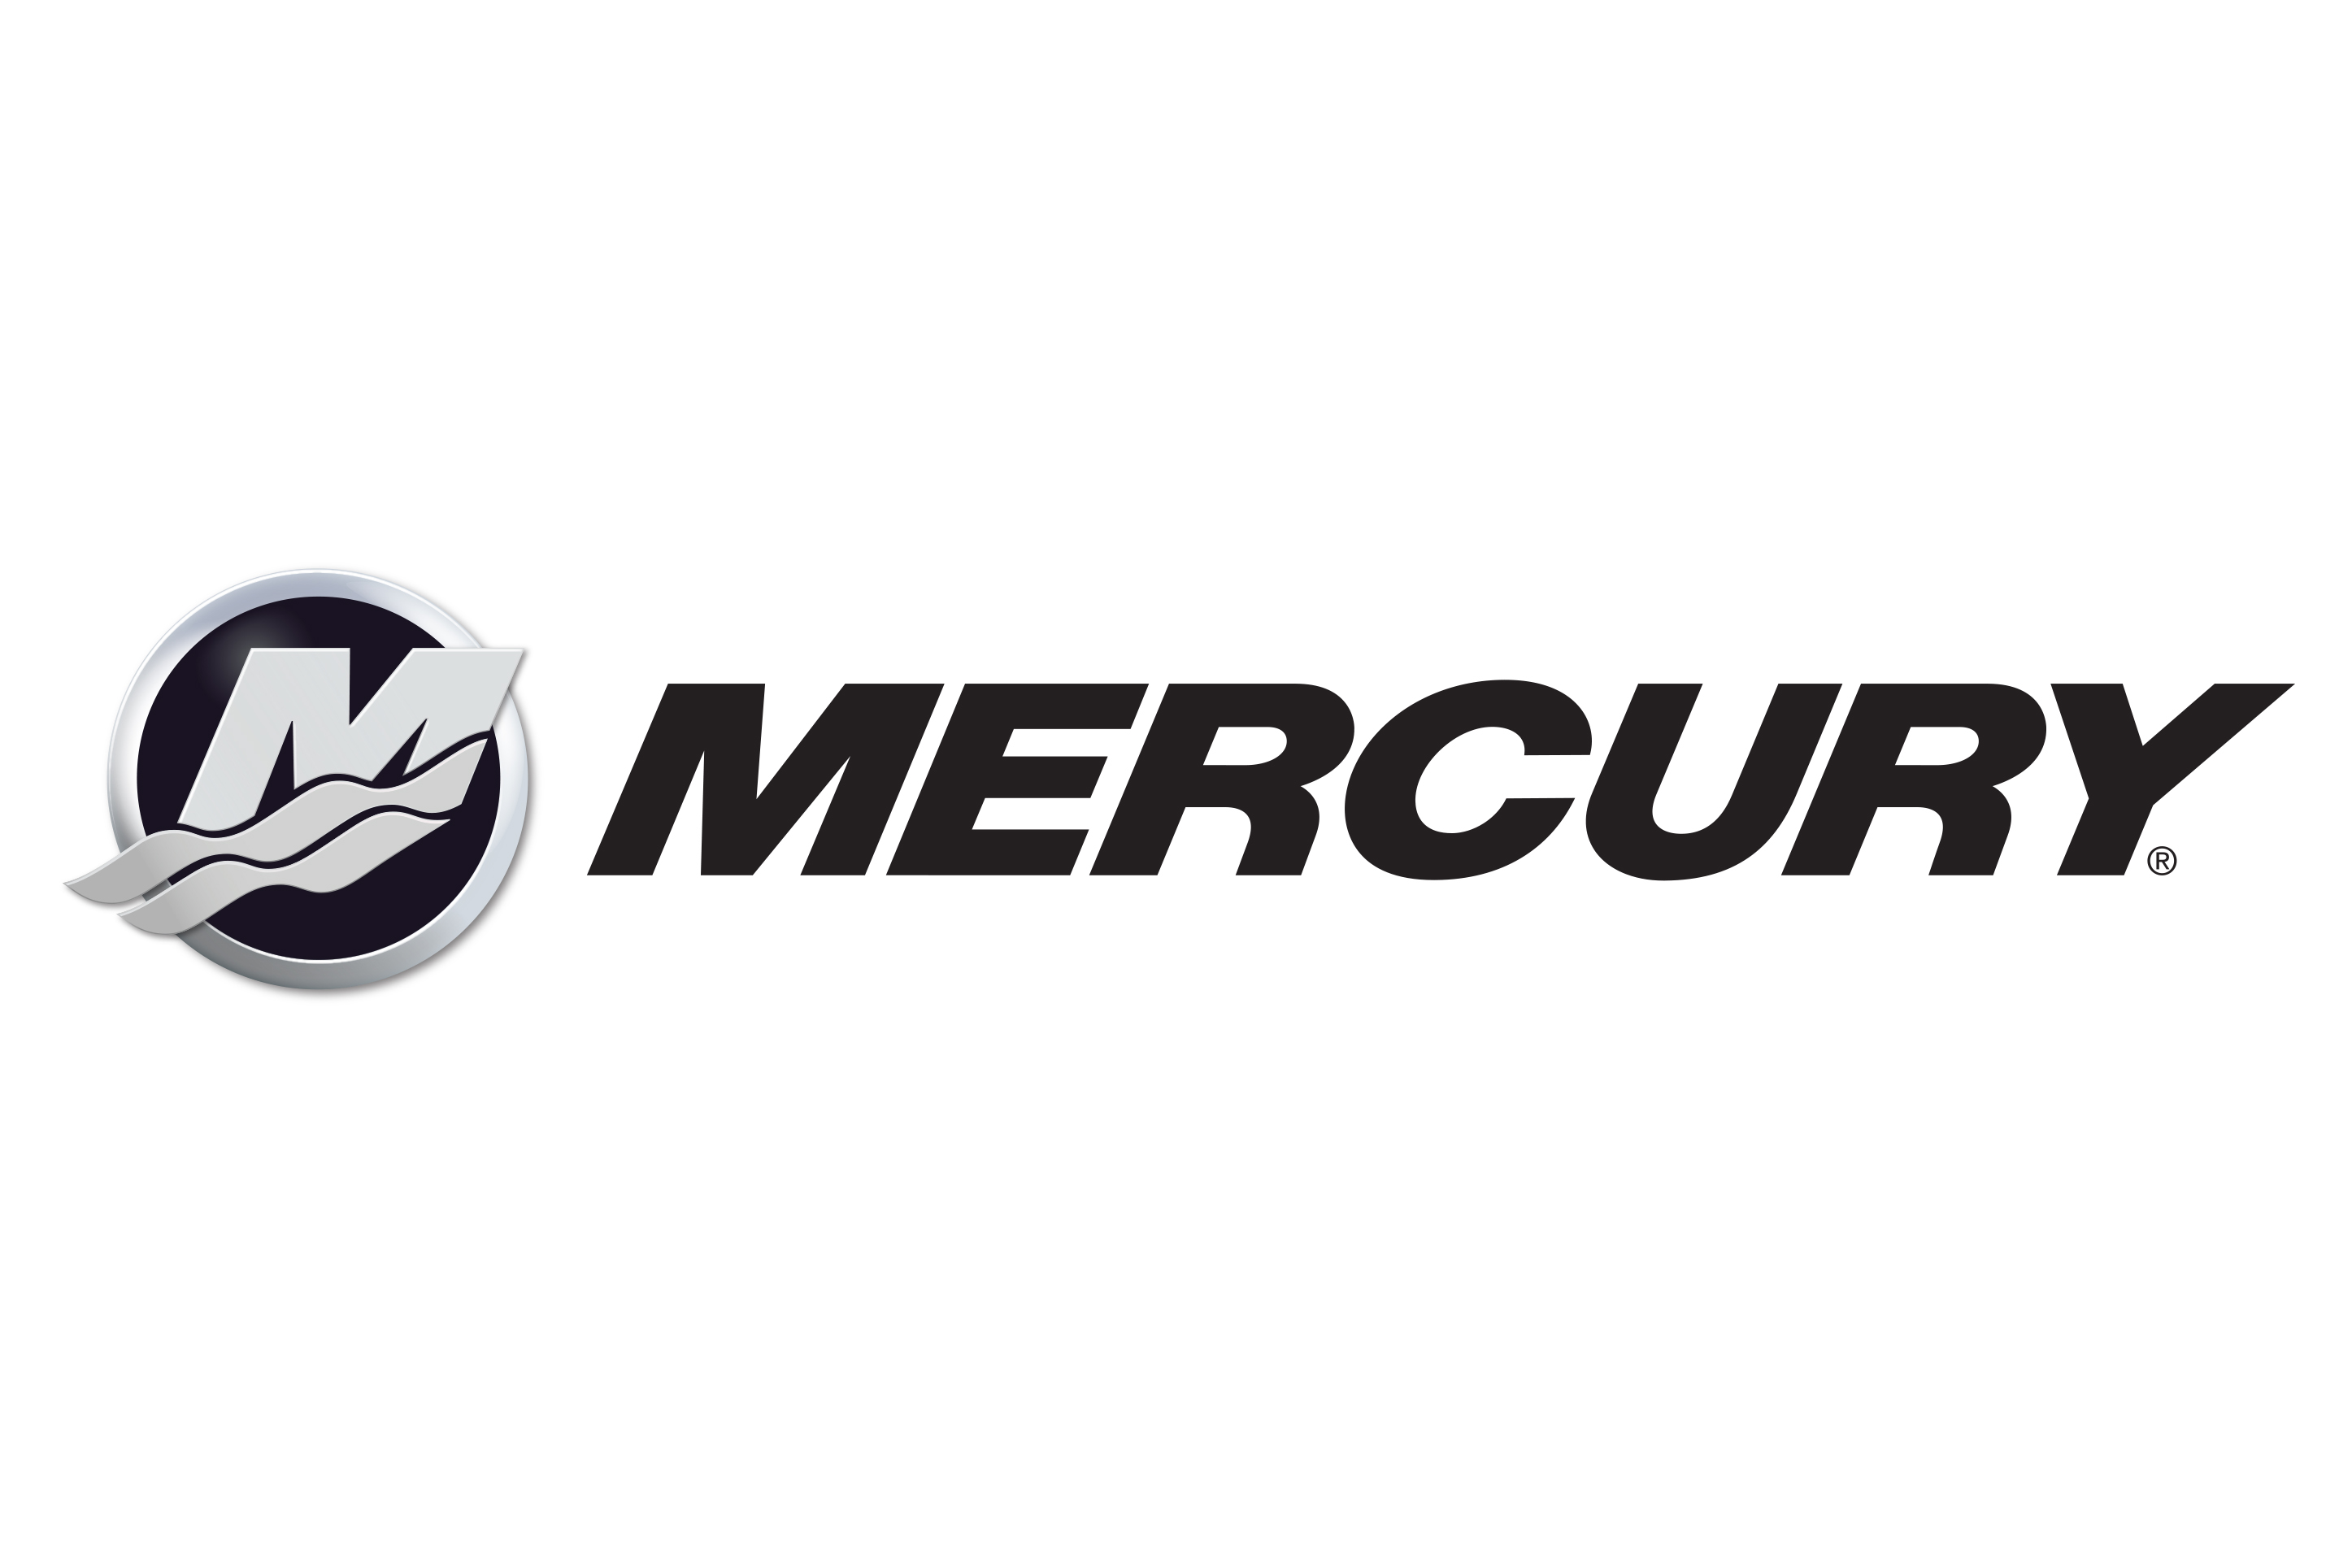 Mercury_Alternate_Lockup